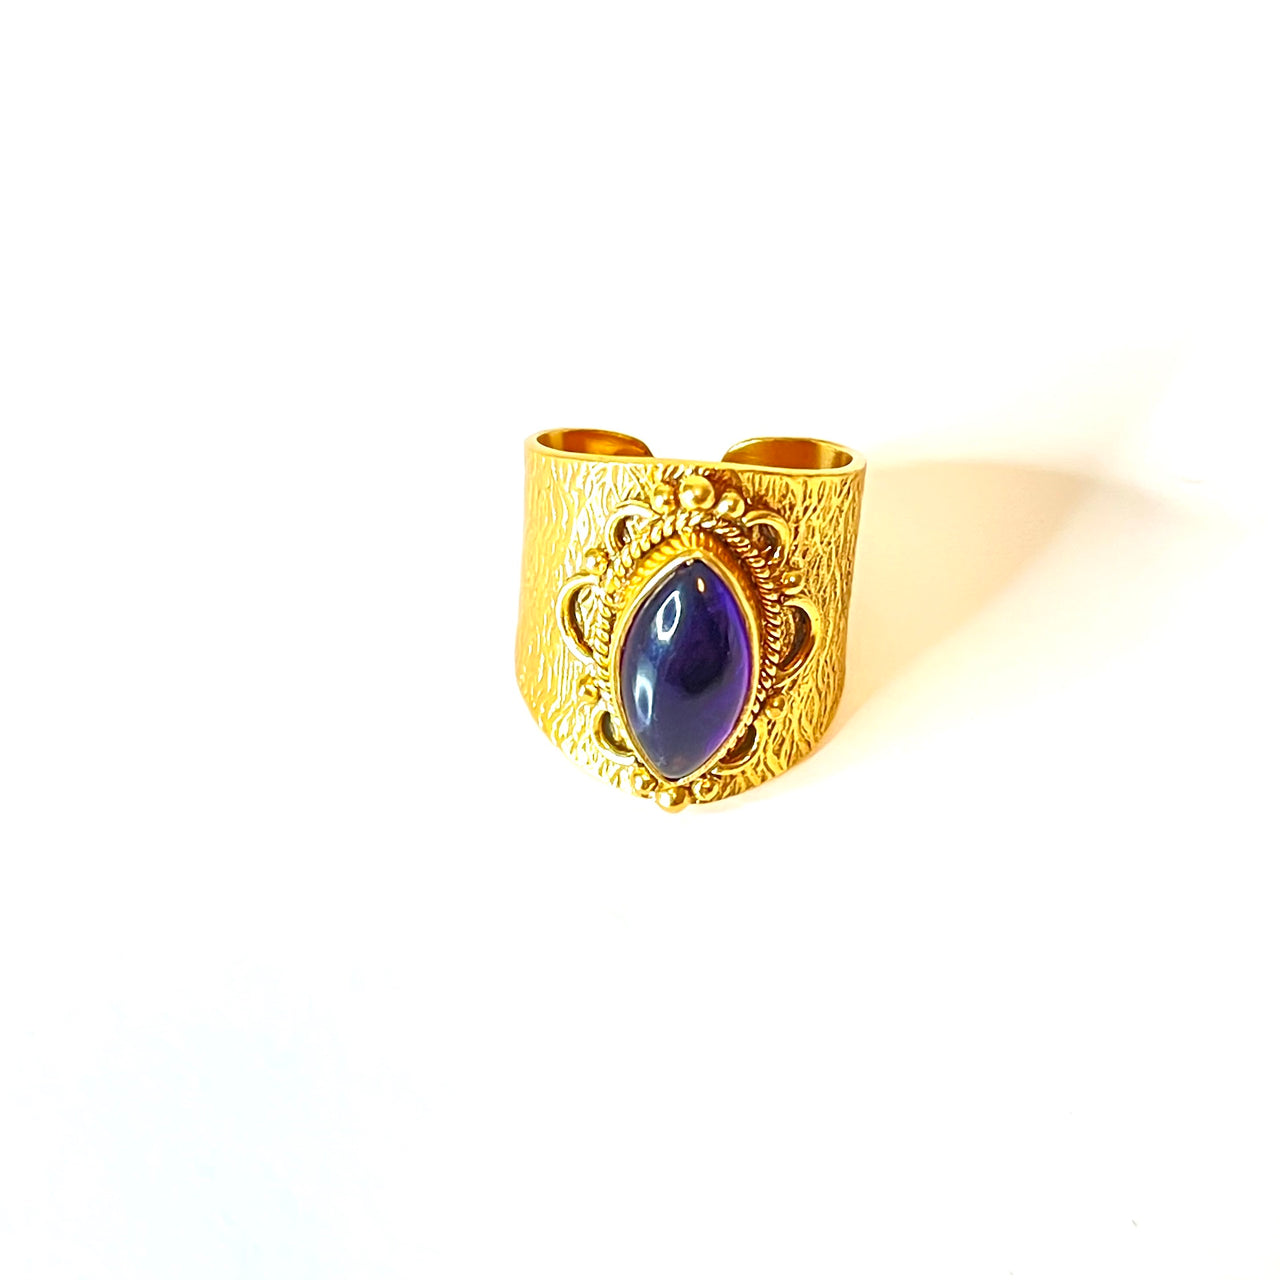 Espectacular anillo de bronce con baño de oro. El detalle central es de Amatista. Este anillo es ajustable lo que lo hace perfecto. Además es super combinable con tu look favorito. Frontal